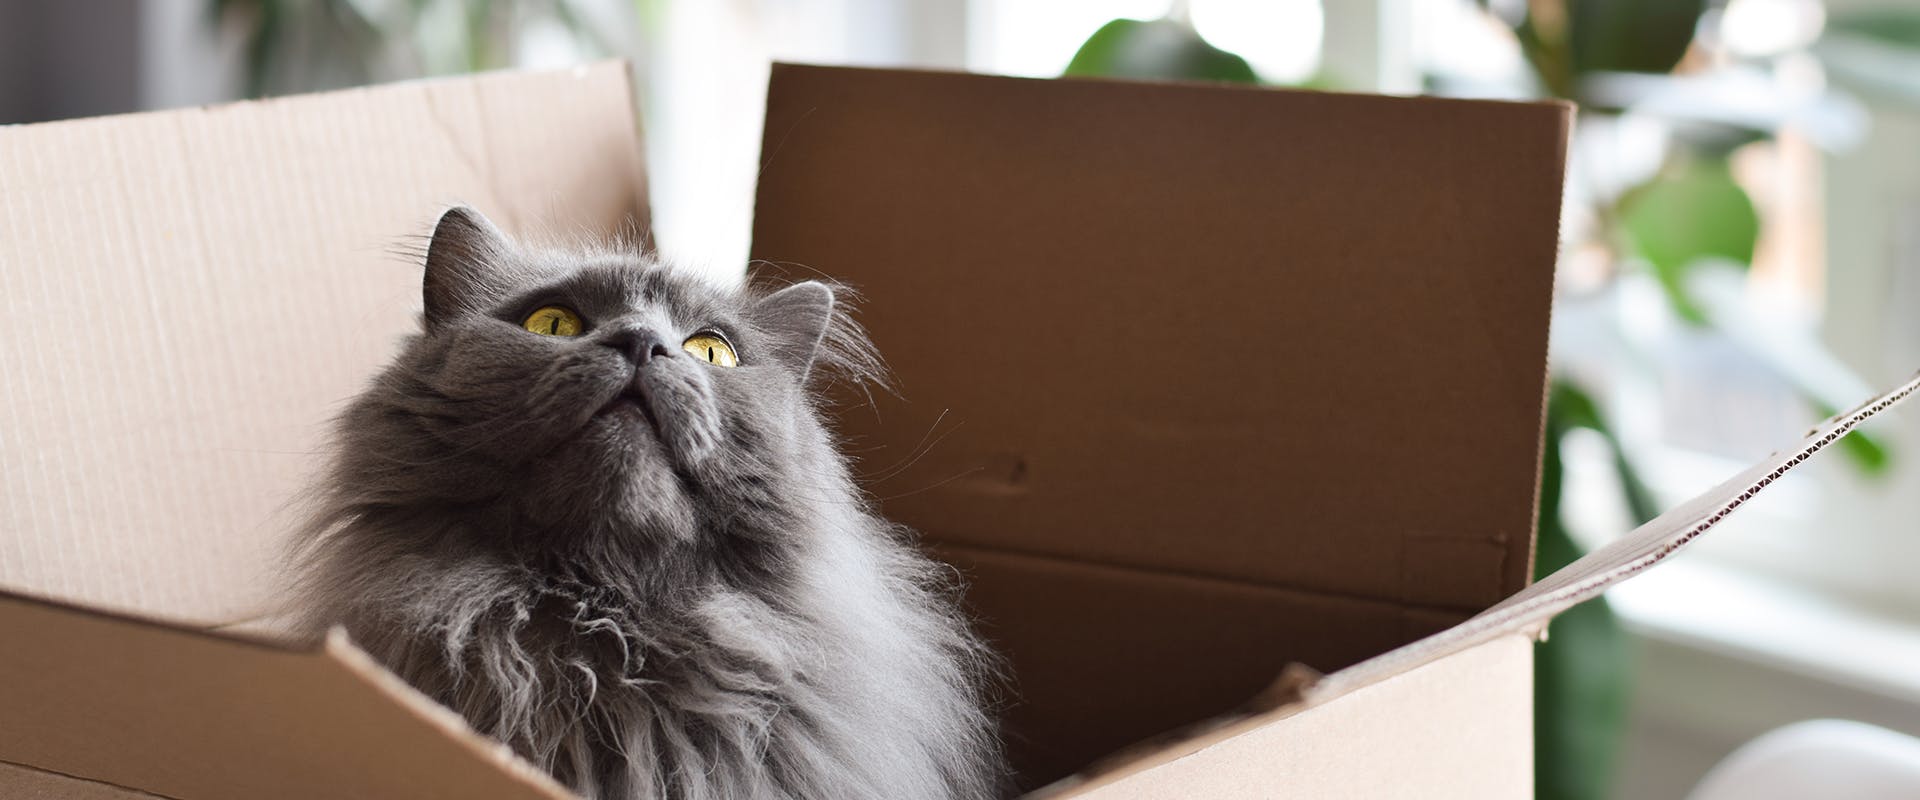 A cat sitting upright in a cardboard box